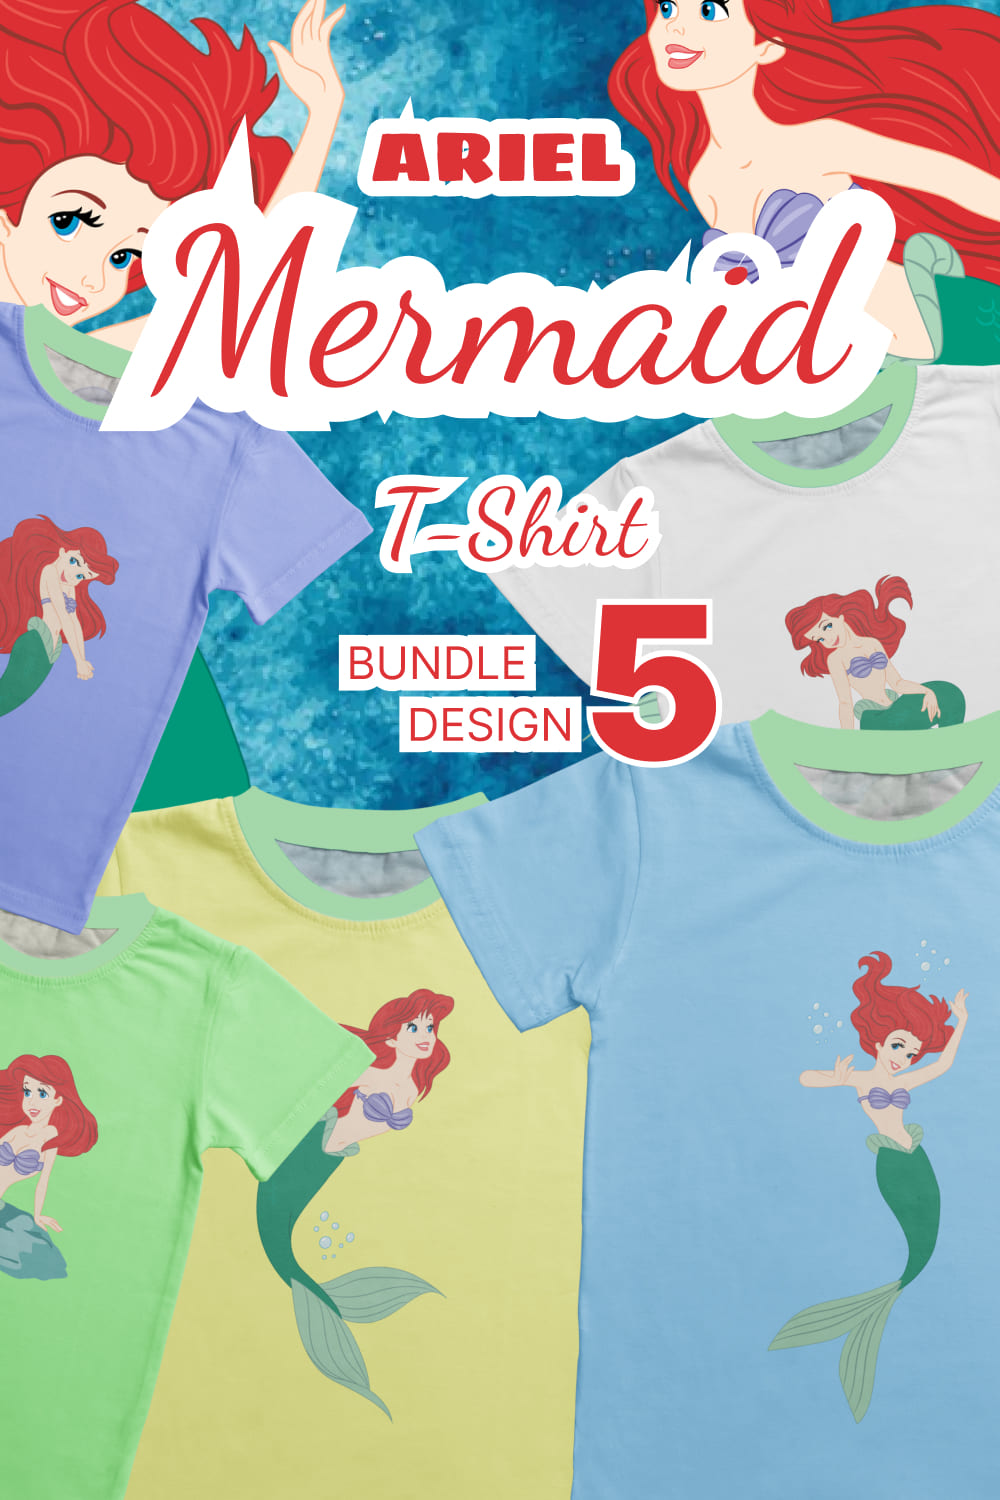 Ariel mermaid images of pinterest.